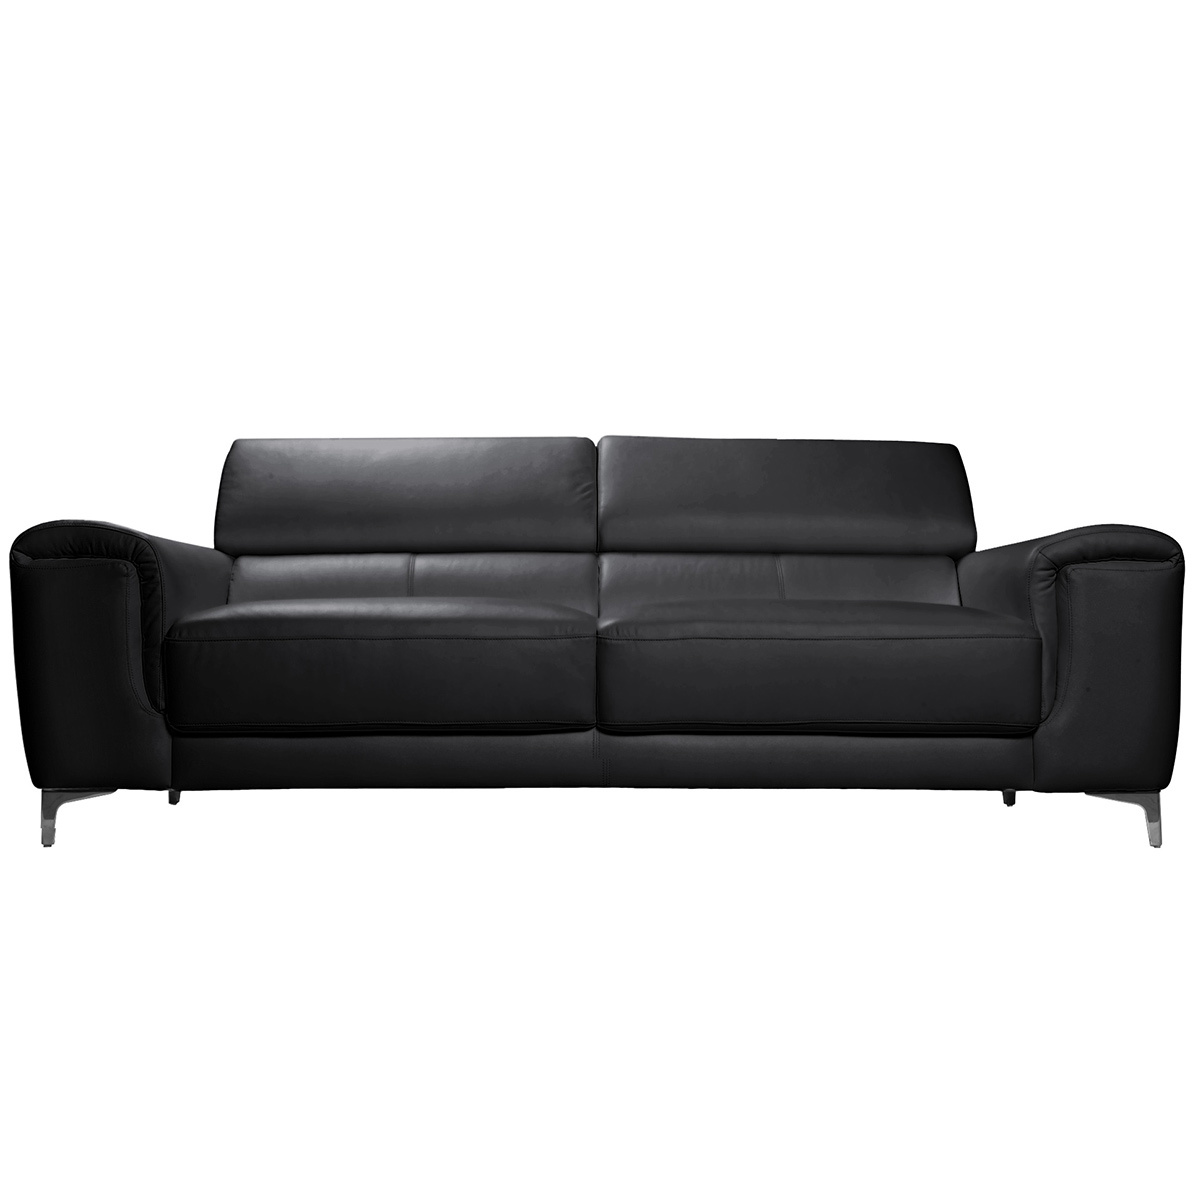 Canapé design avec têtières ajustables 3 places cuir noir et acier chromé NEVADA vue1